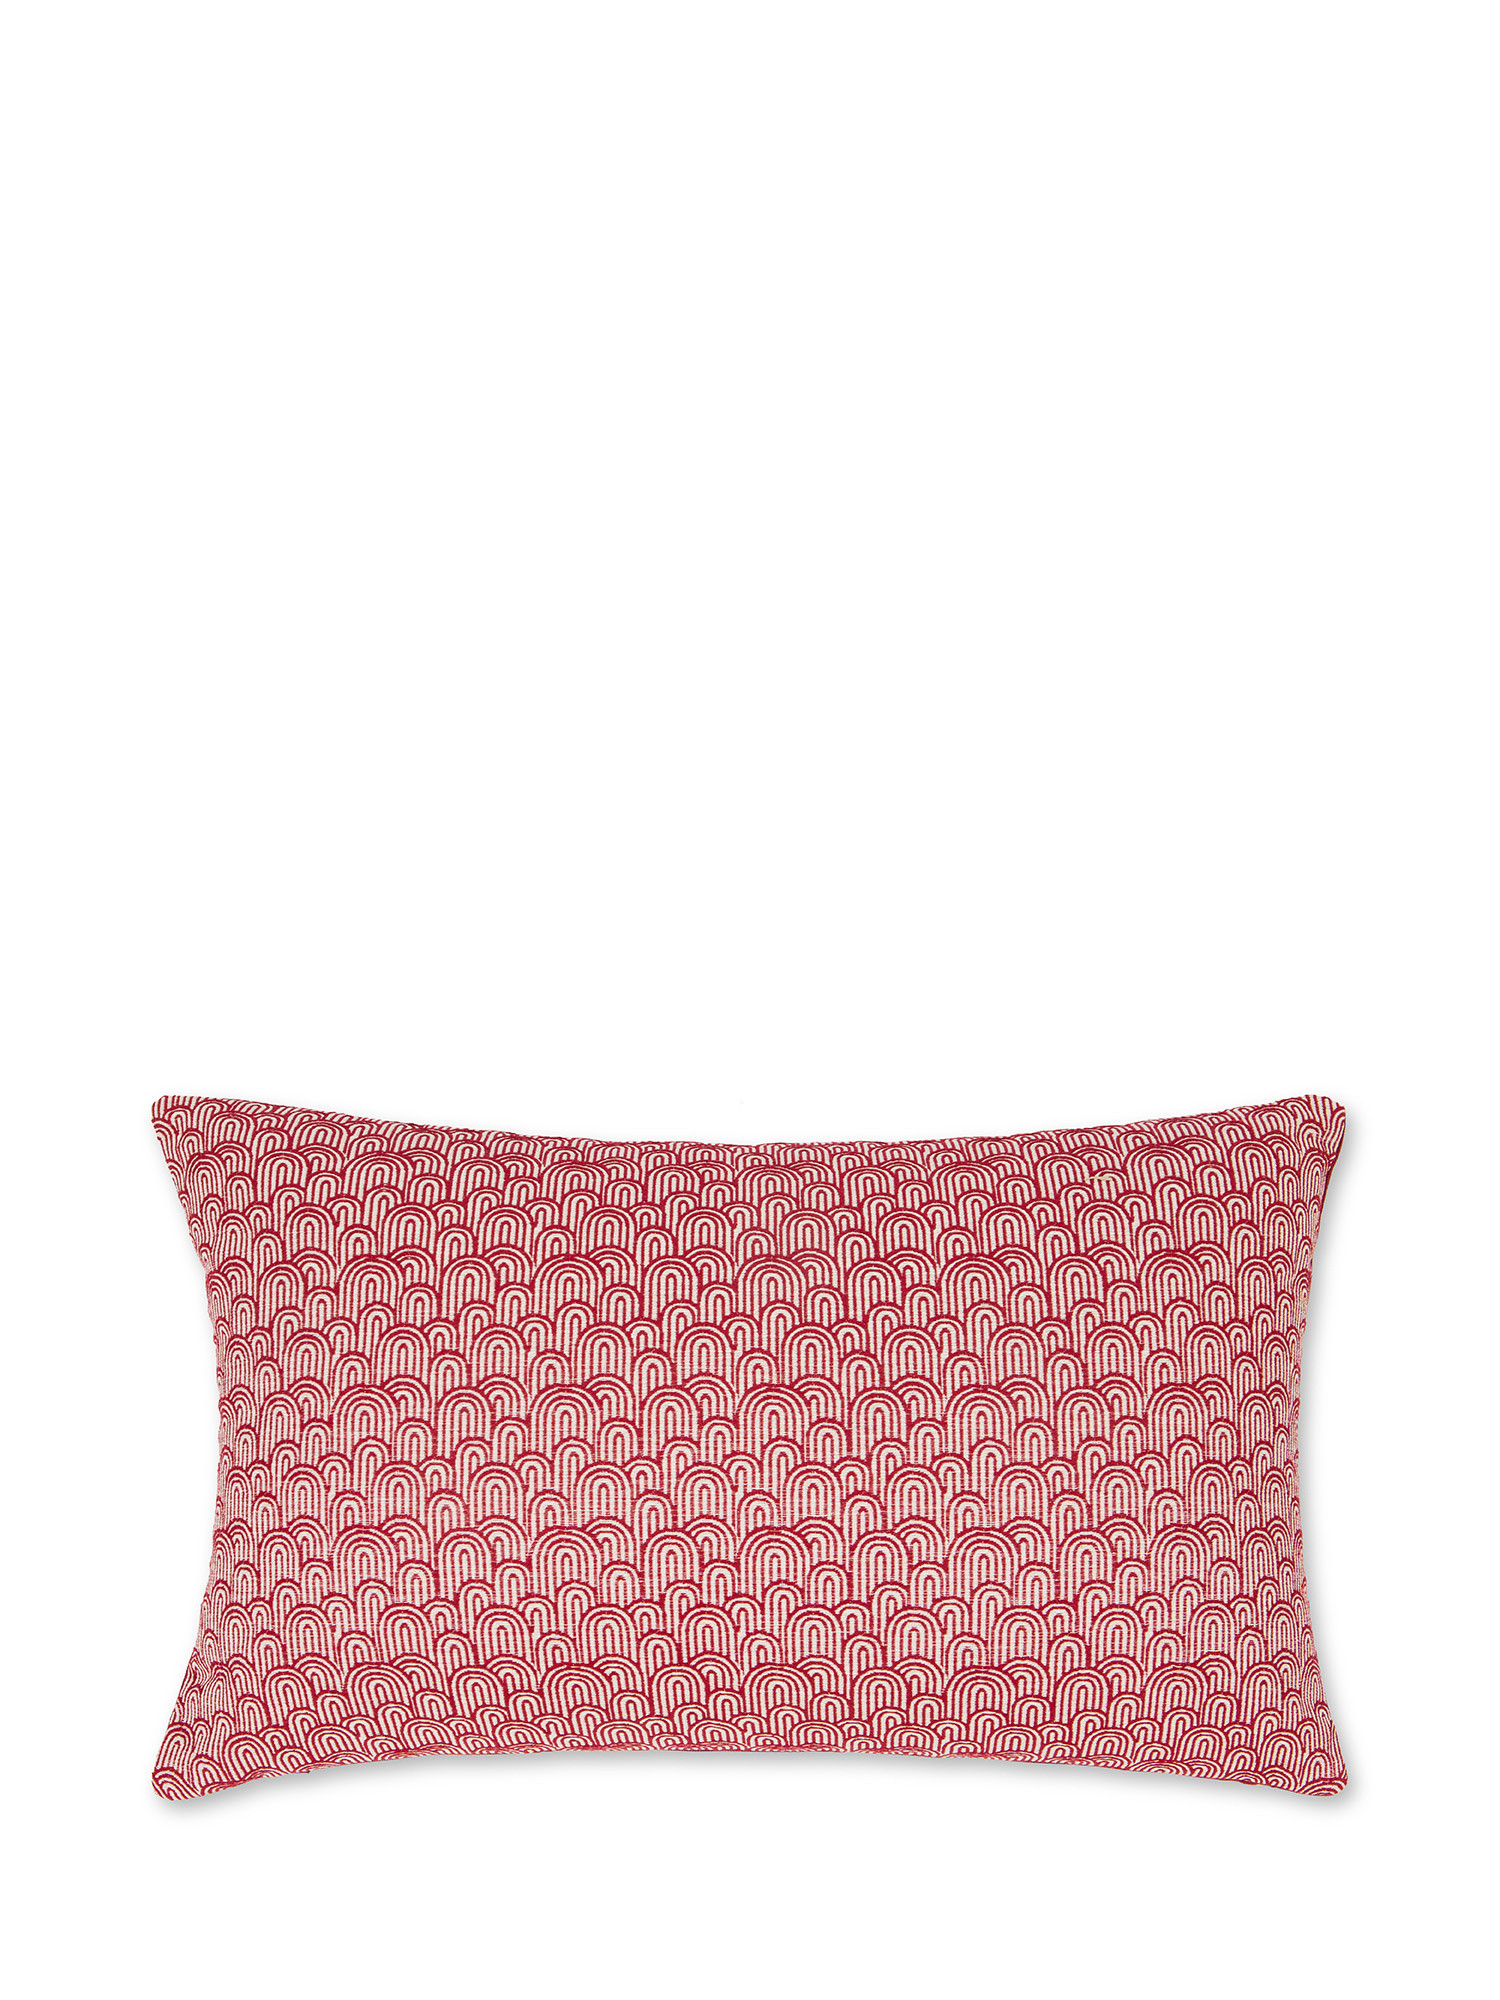 Cuscino tessuto jacquard motivo geometrico 35X55cm, Rosso, large image number 0